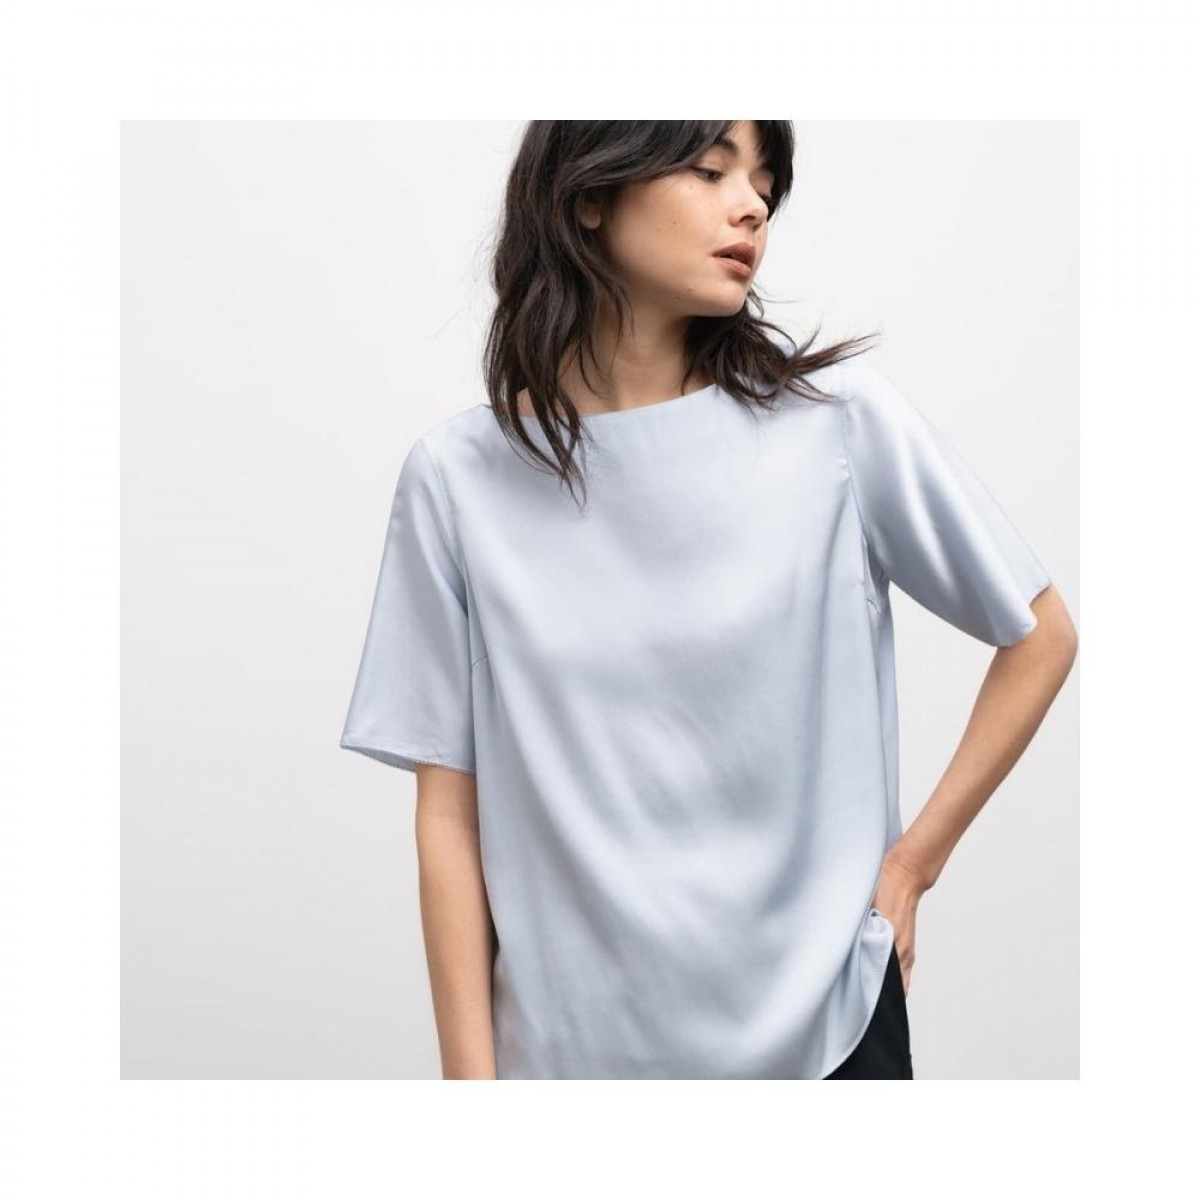 yoli blouse - light blue - ærme detalje